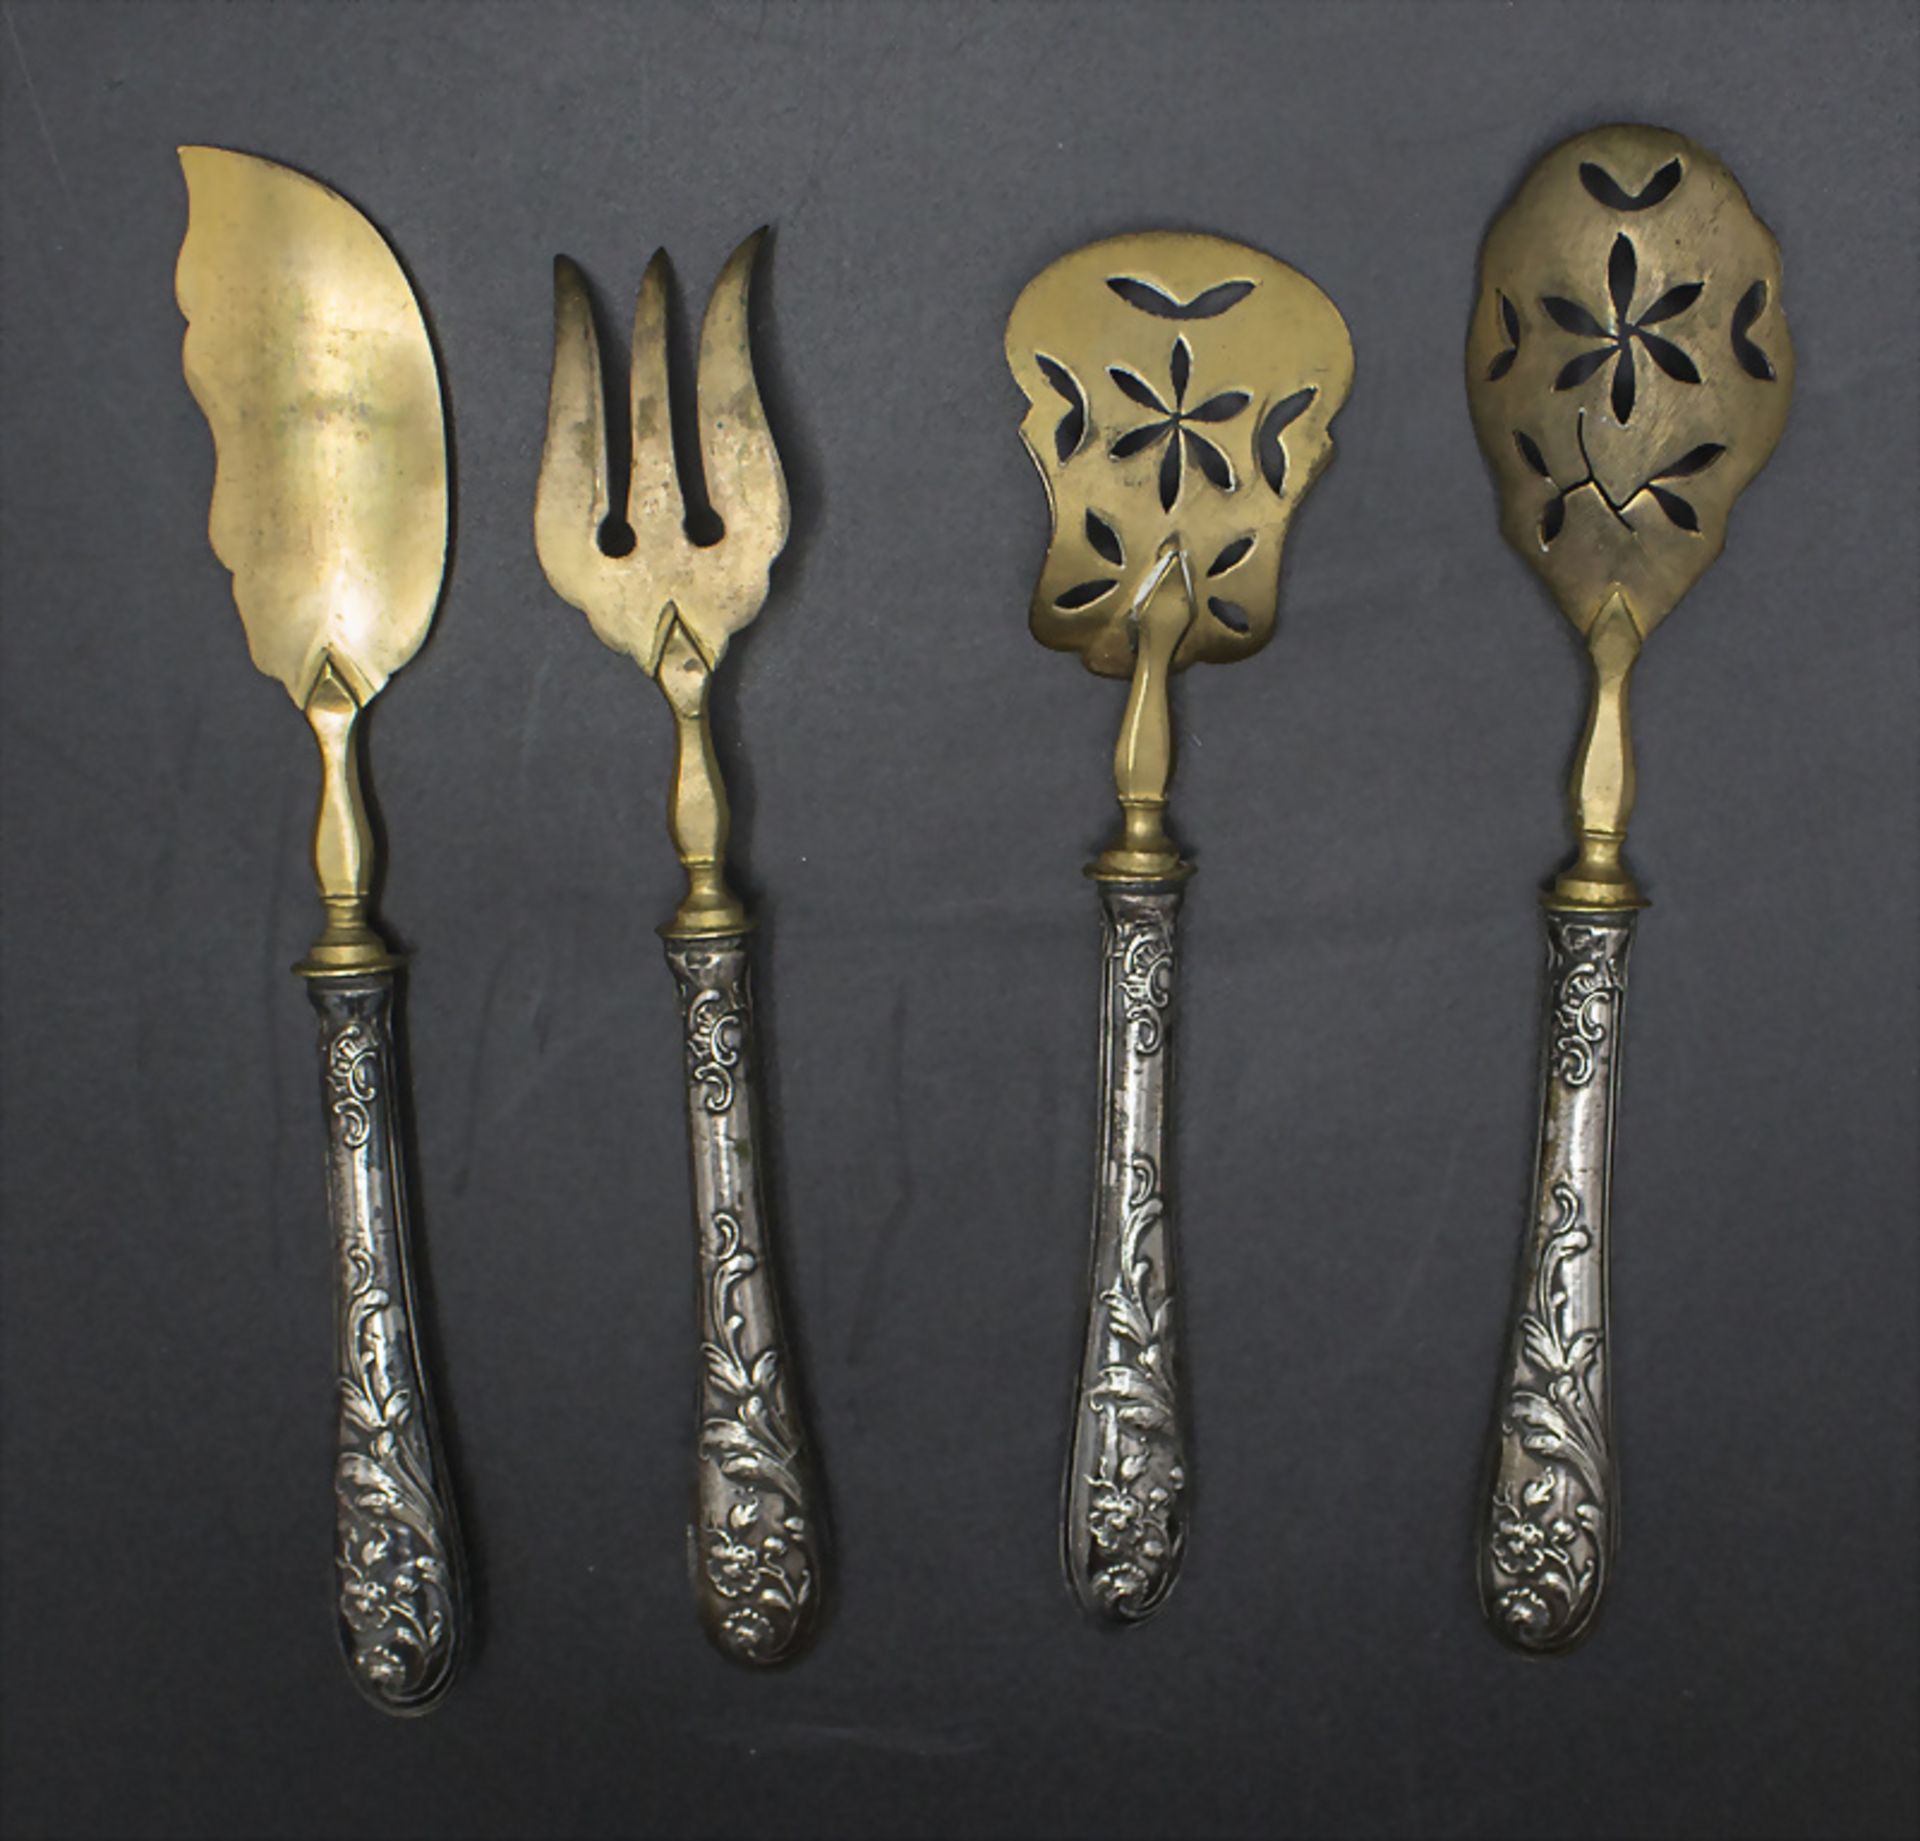 4 Teile Jugendstil Vorlegebesteck / A set of 4 pieces of silver serving cutlery, wohl ... - Image 2 of 3